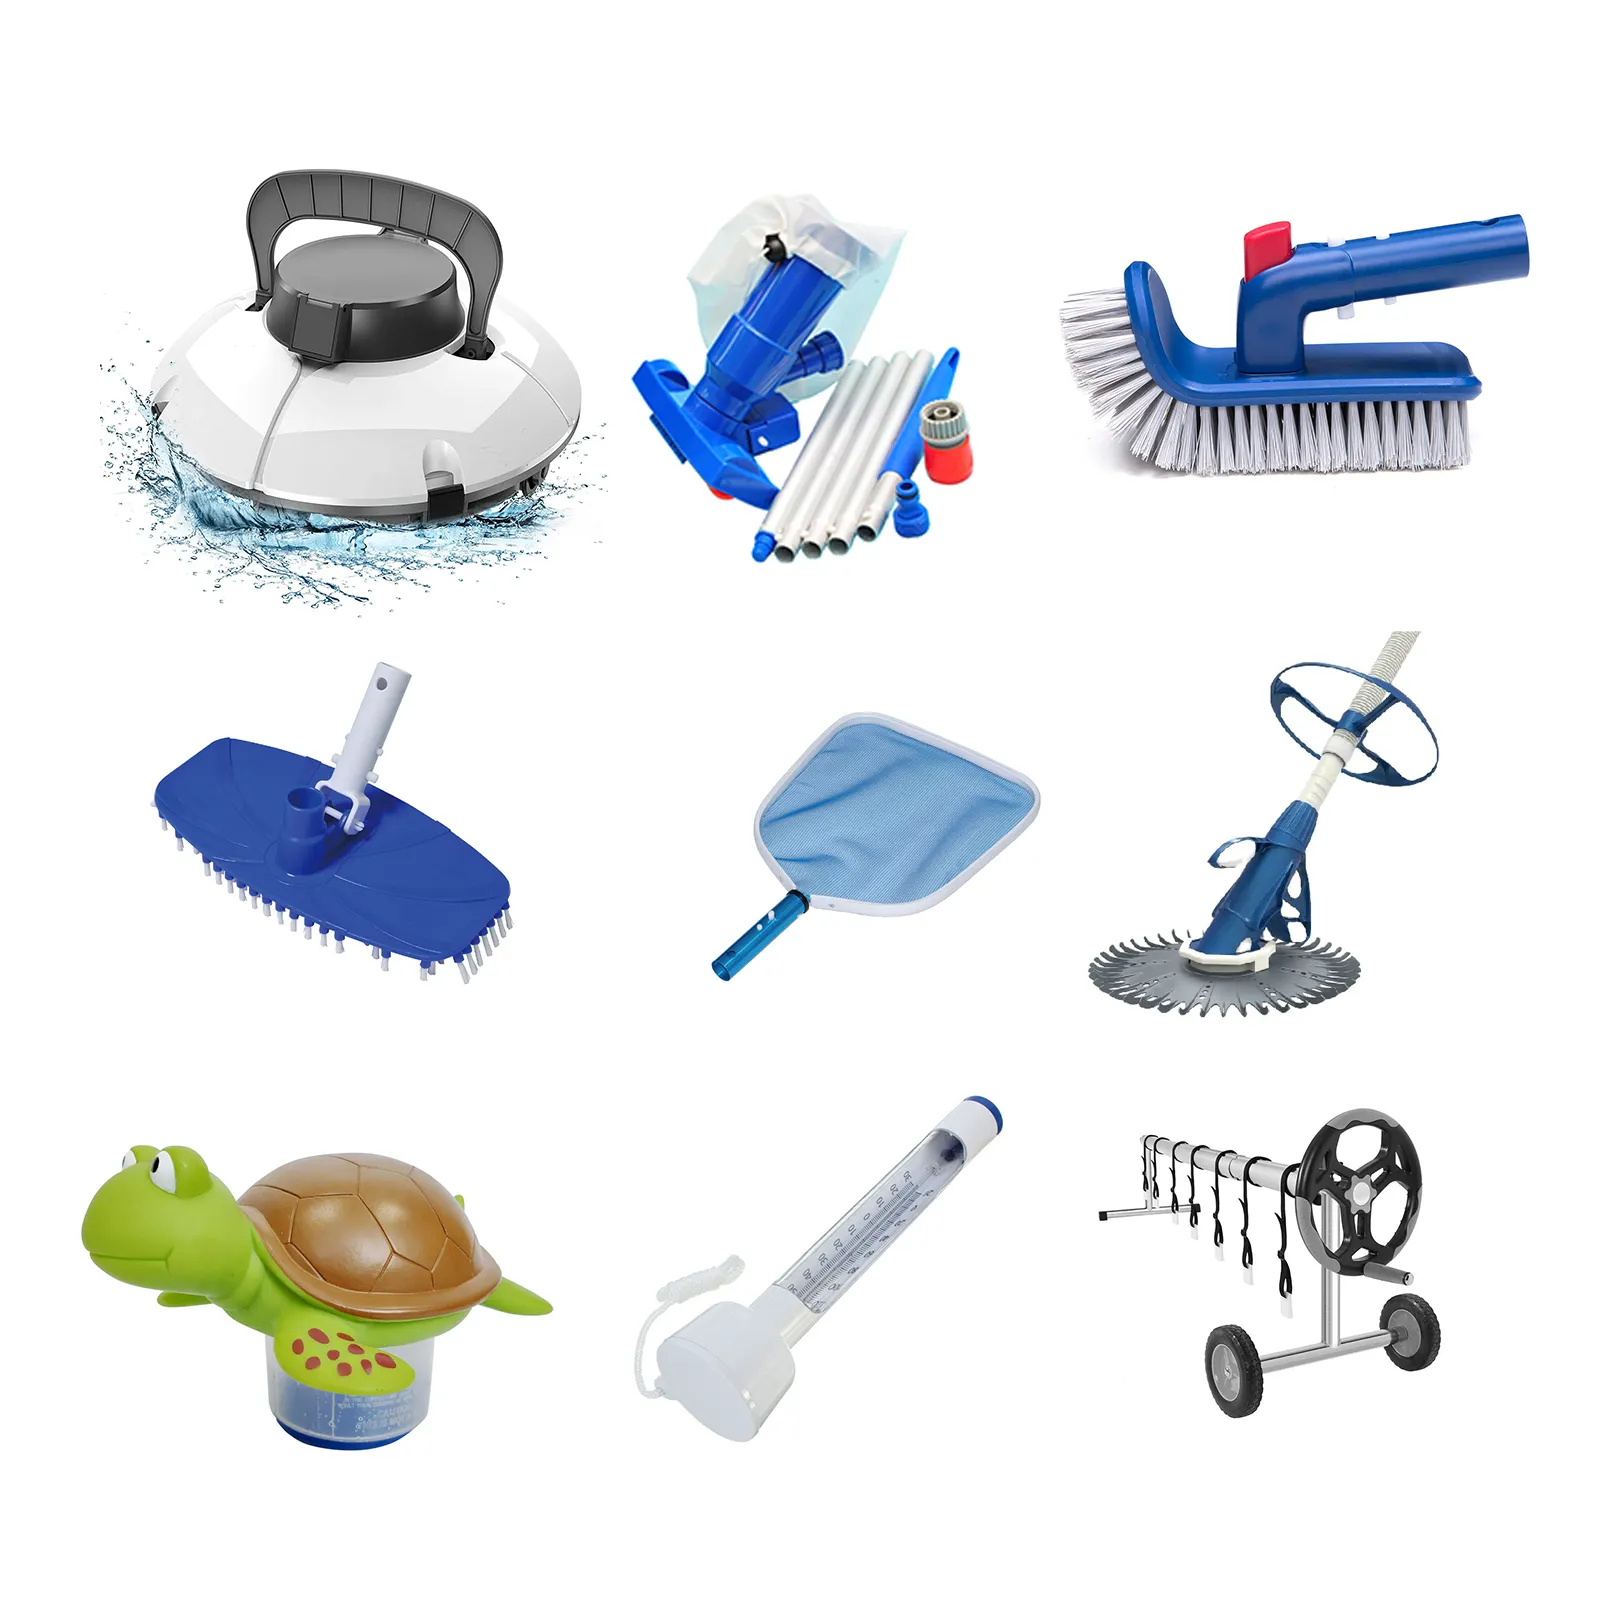 مجموعة كاملة من مصادر المصنع لتنظيف حمامات السباحة ملحقات ومعدات تنظيف حمامات السباحة روبوت مضخة مياه لتنظيف حمامات السباحة